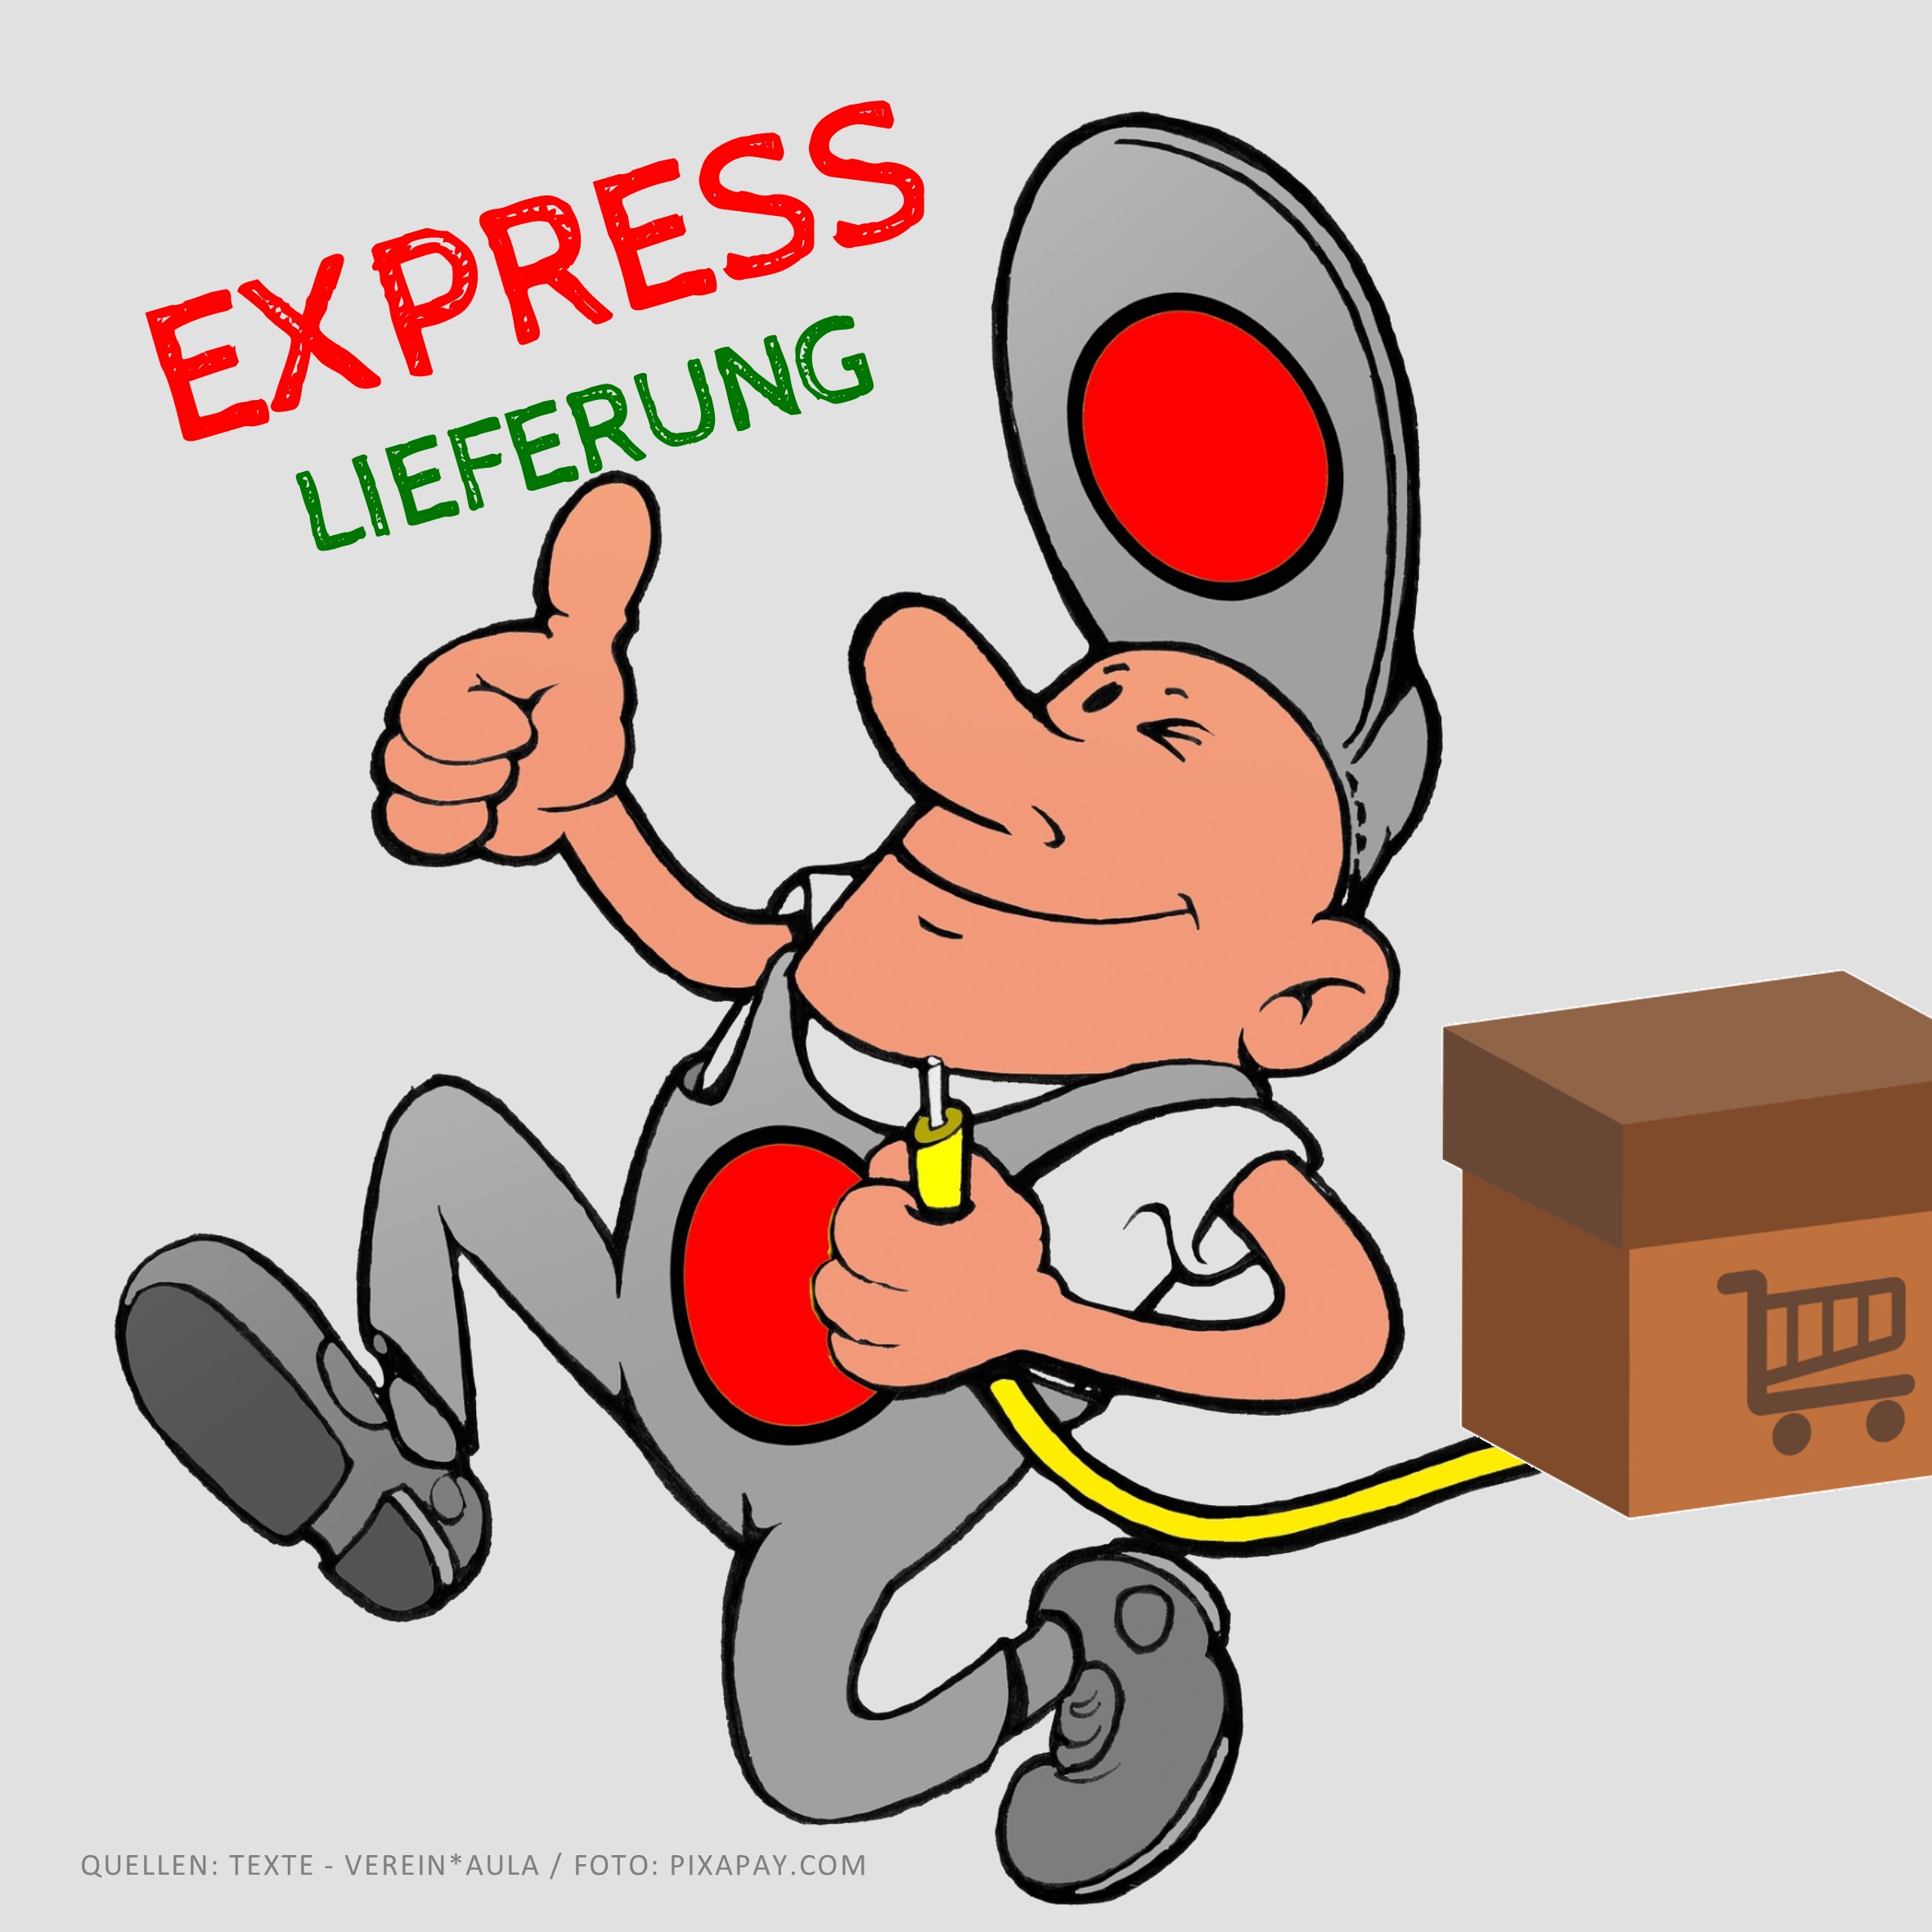 EXPRESS Lieferung